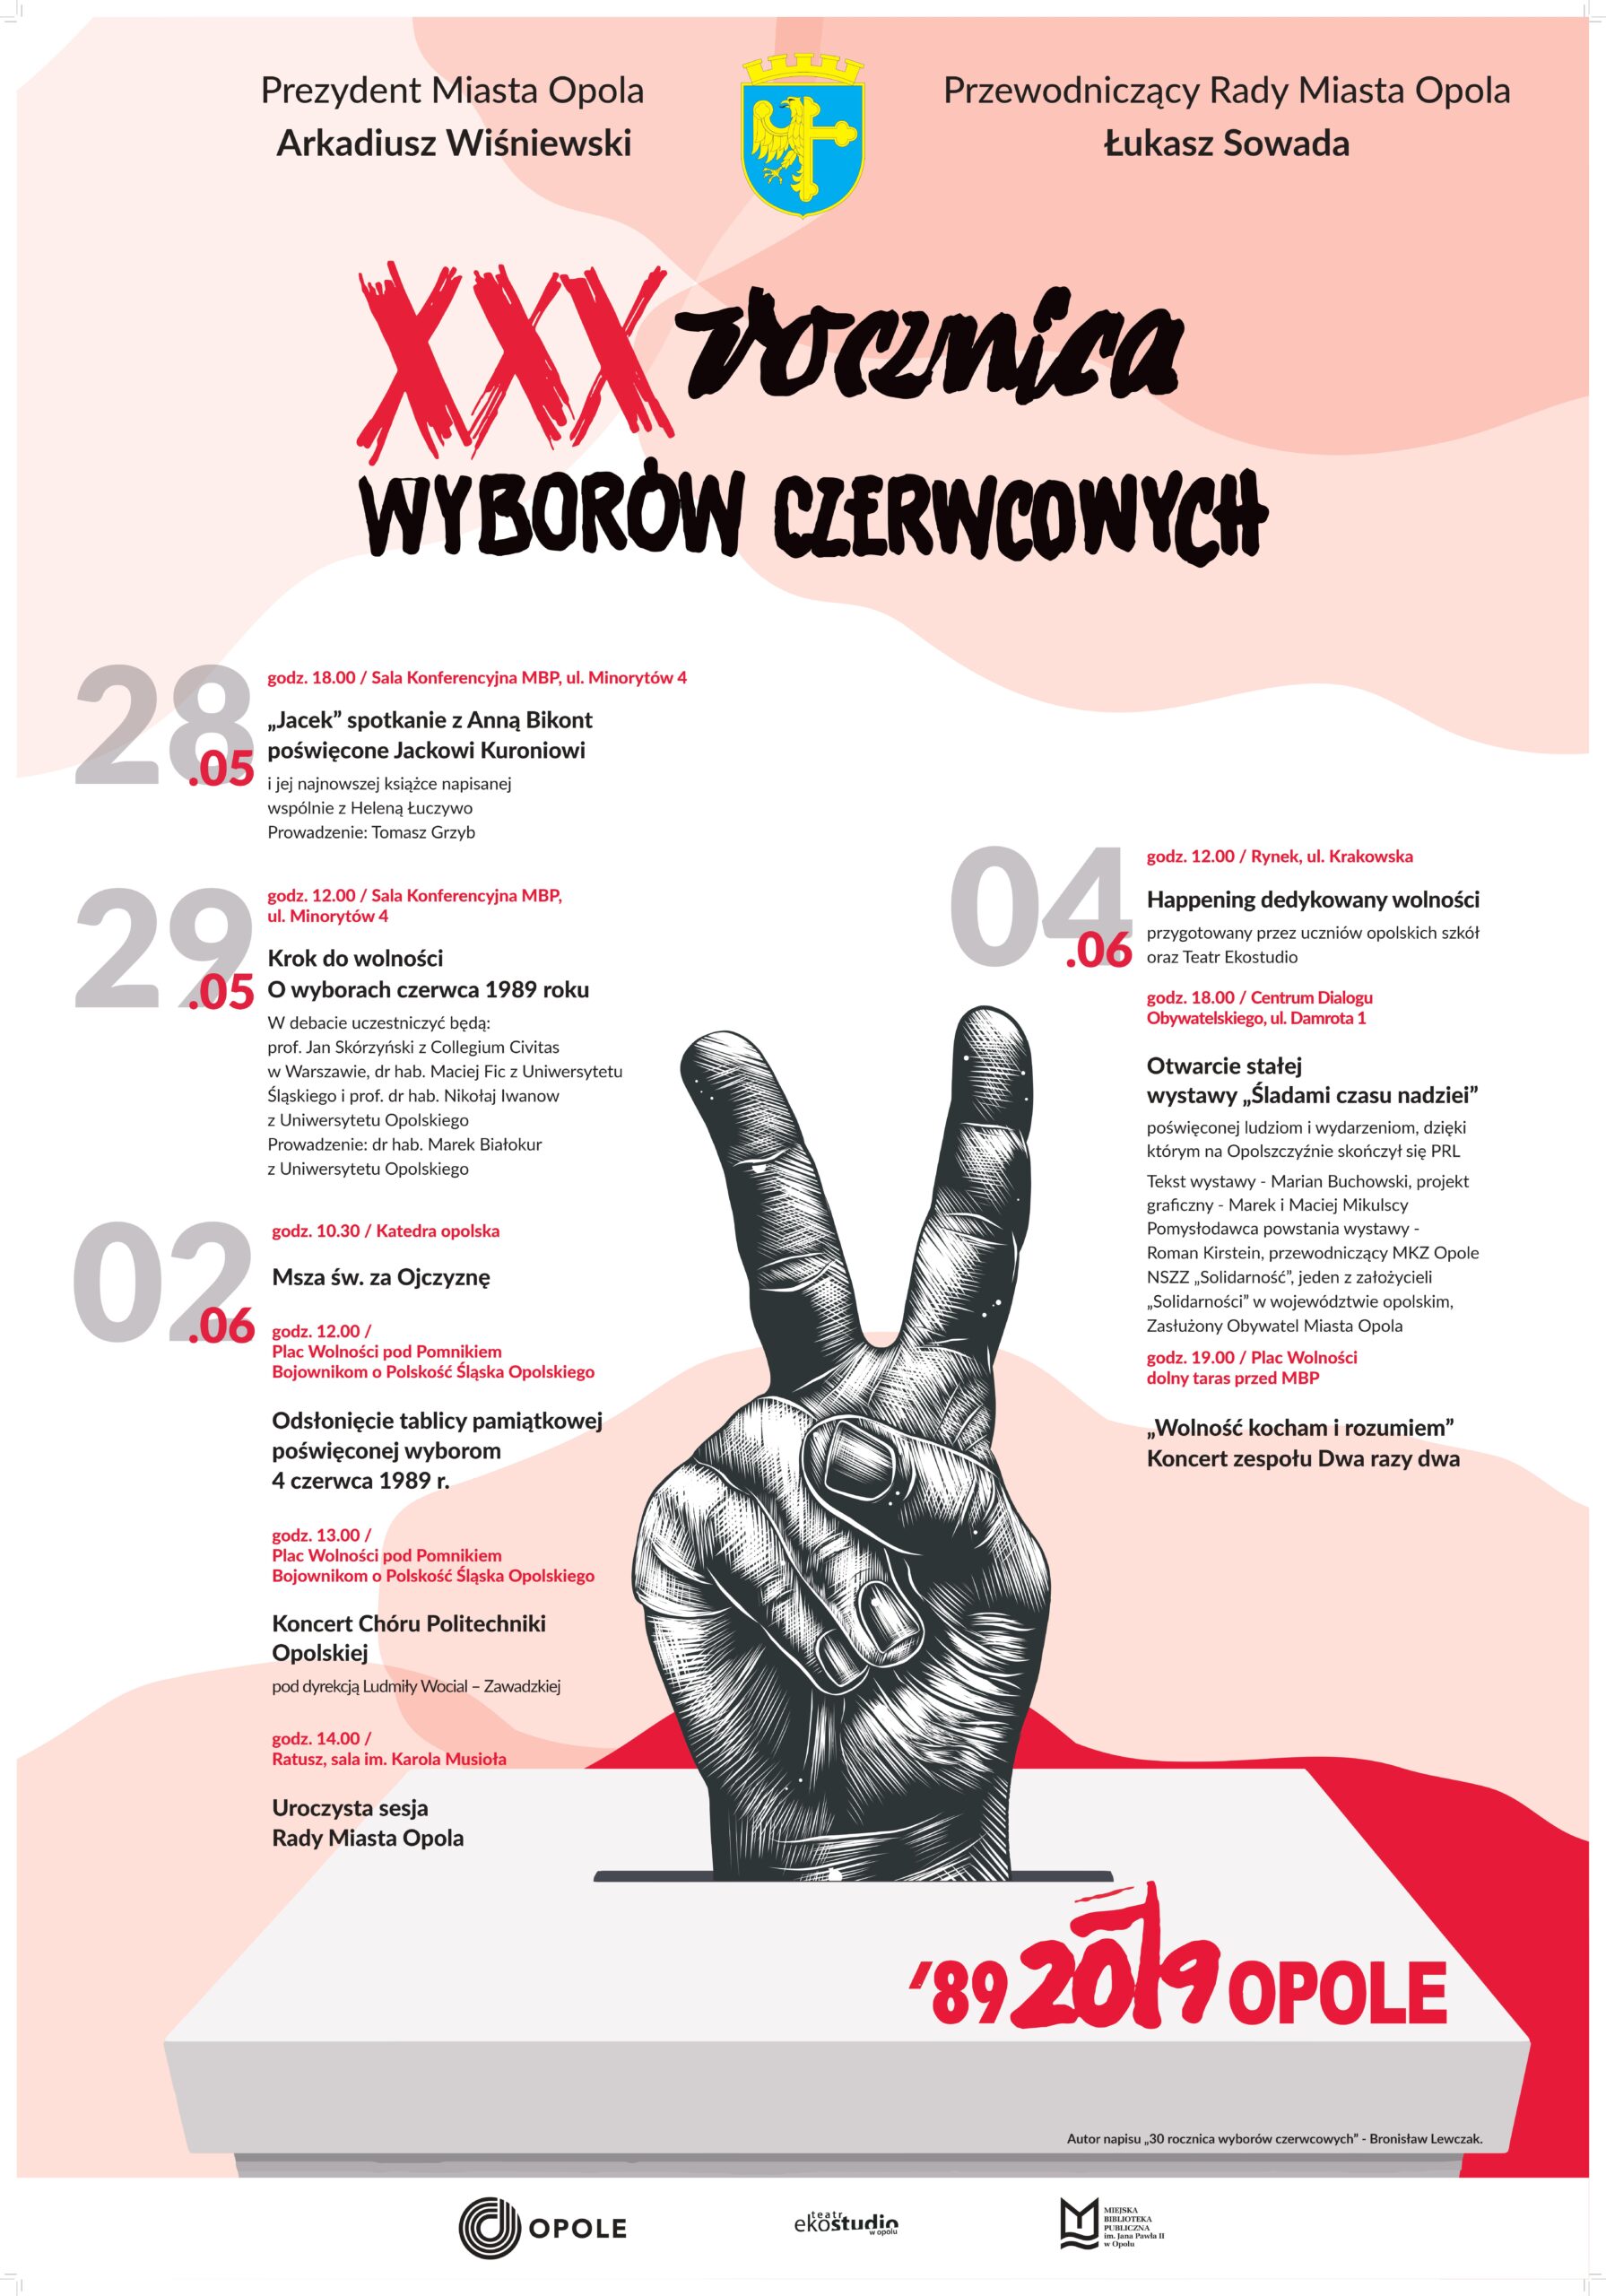 Read more about the article Krok do wolności: O wyborach czerwcowych 1989 roku / XXX rocznica WYBORÓW CZERWCOWYCH